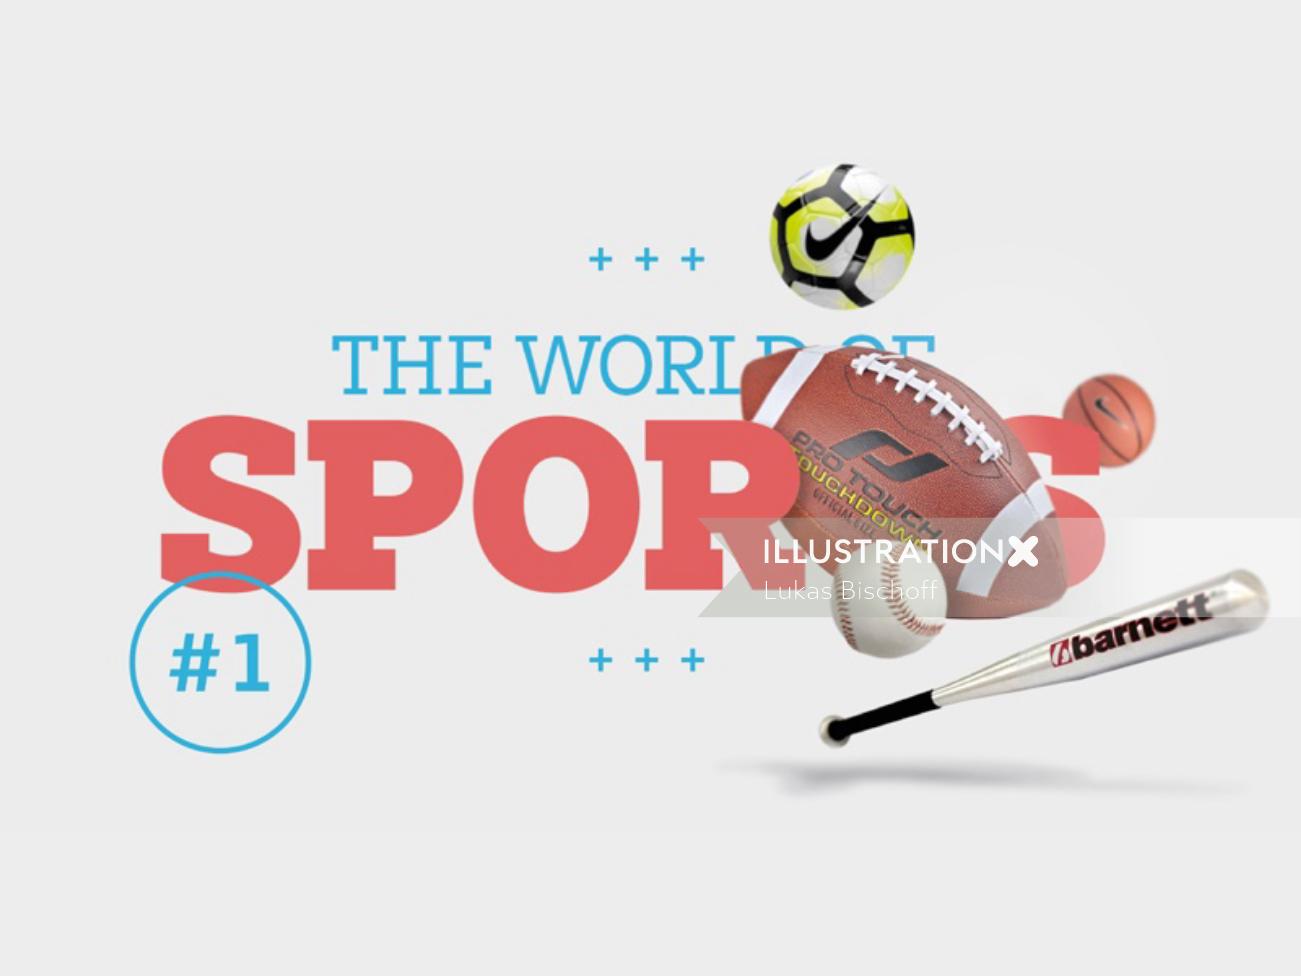 スポーツの世界のタイポグラフィデザイン